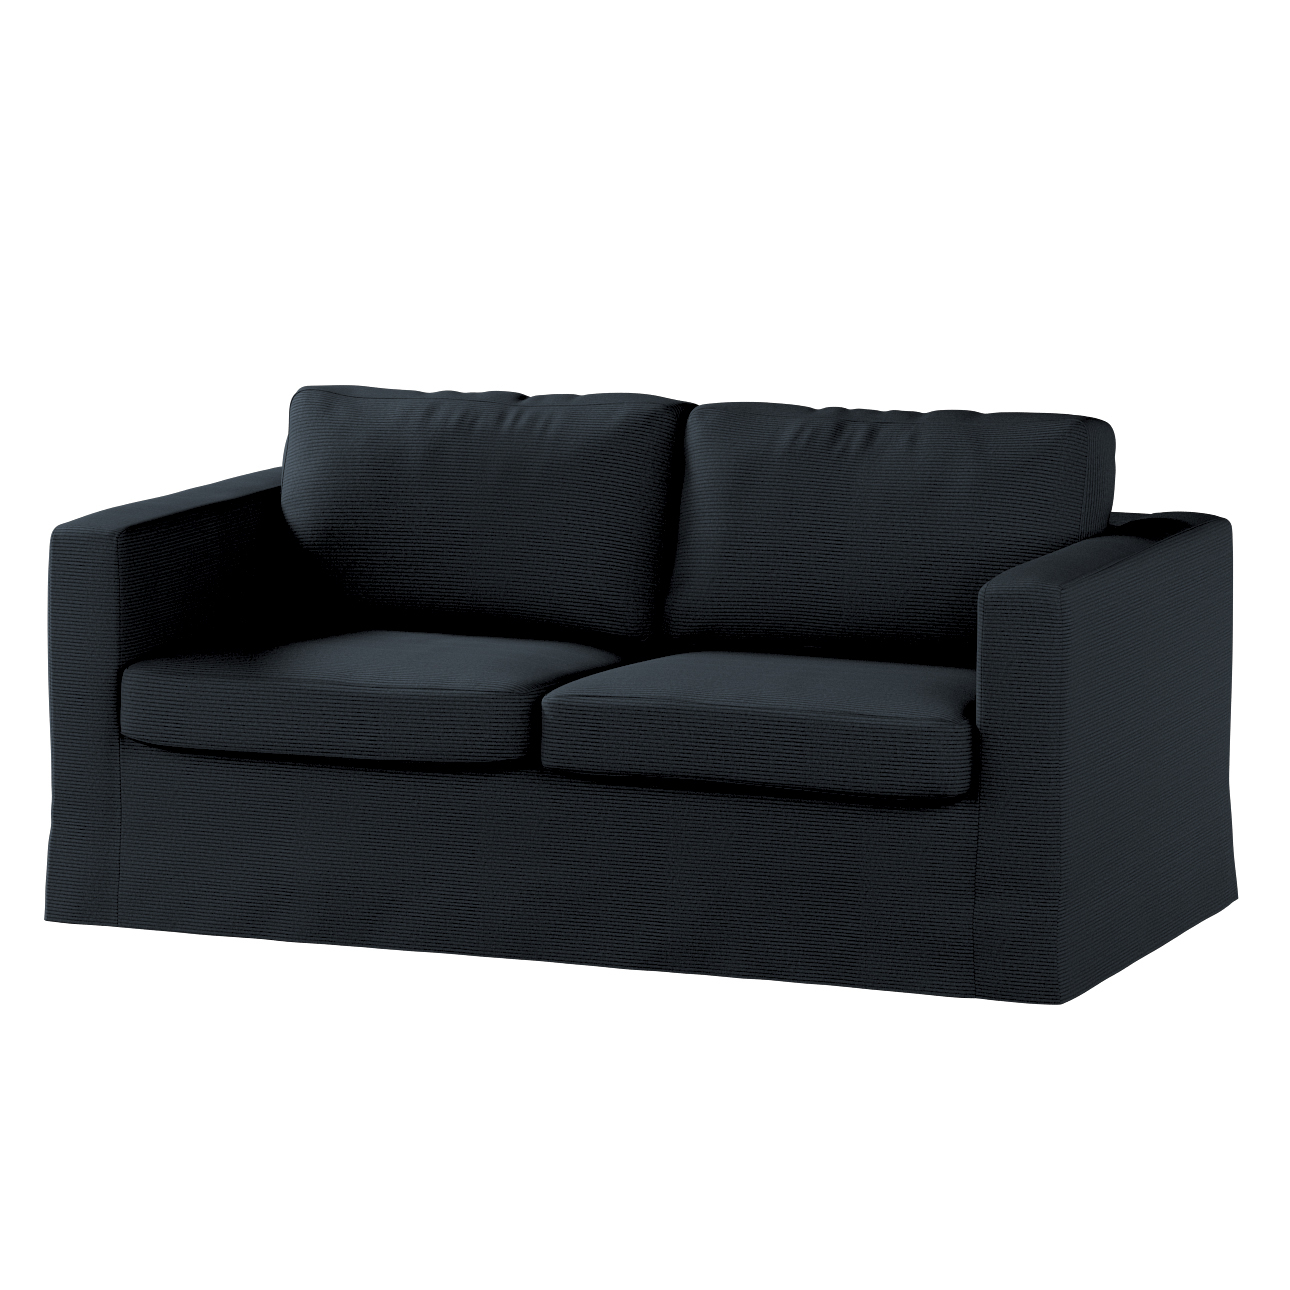 Bezug für Karlstad 2-Sitzer Sofa nicht ausklappbar, lang, anthrazit, Sofahu günstig online kaufen